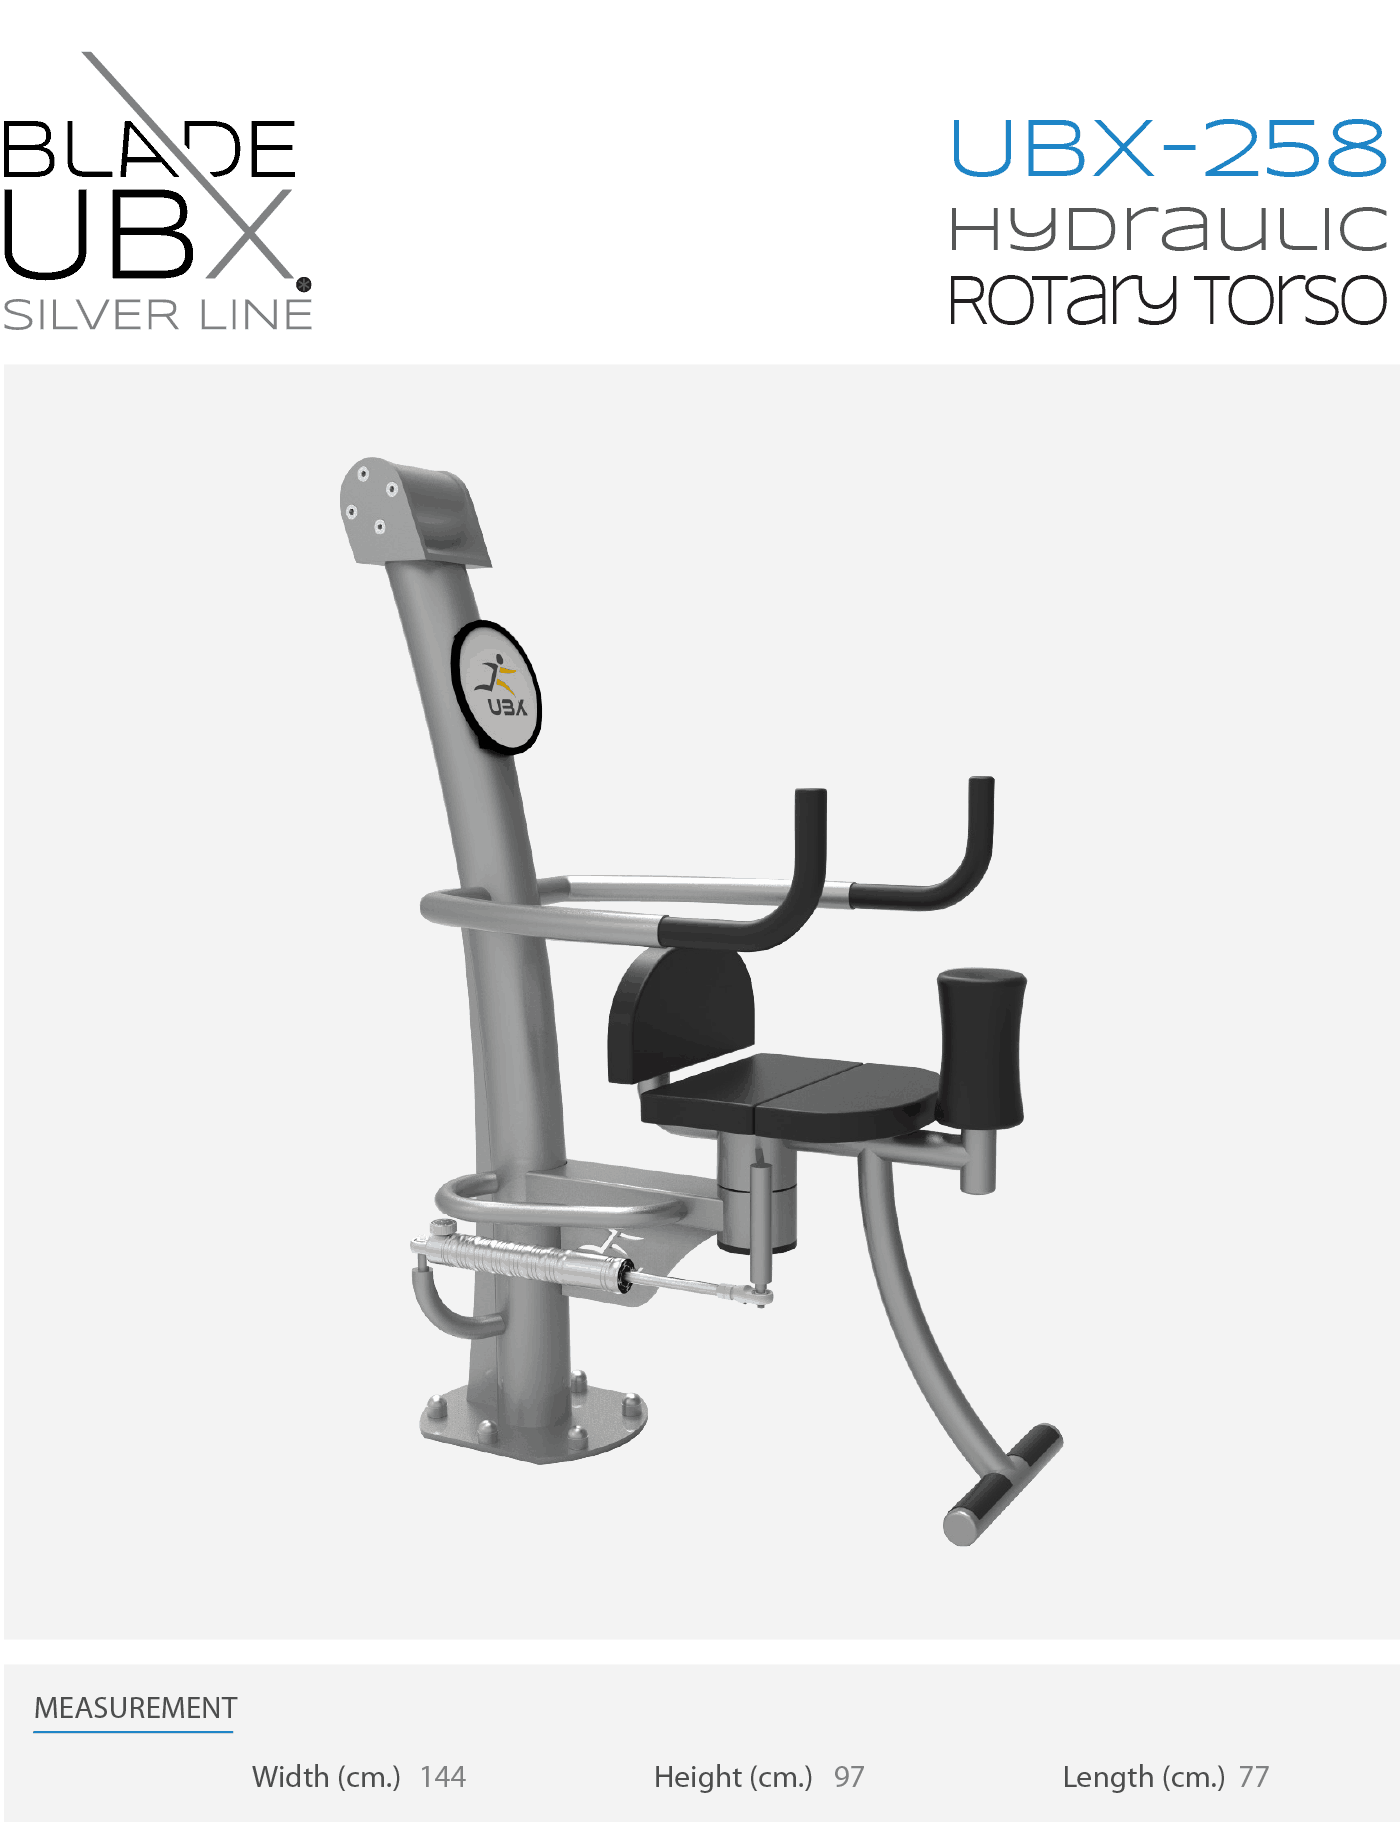 ubx-258 hydraulic rotary torso - אורבניקס - מתקן כושר - מאמן חתירה